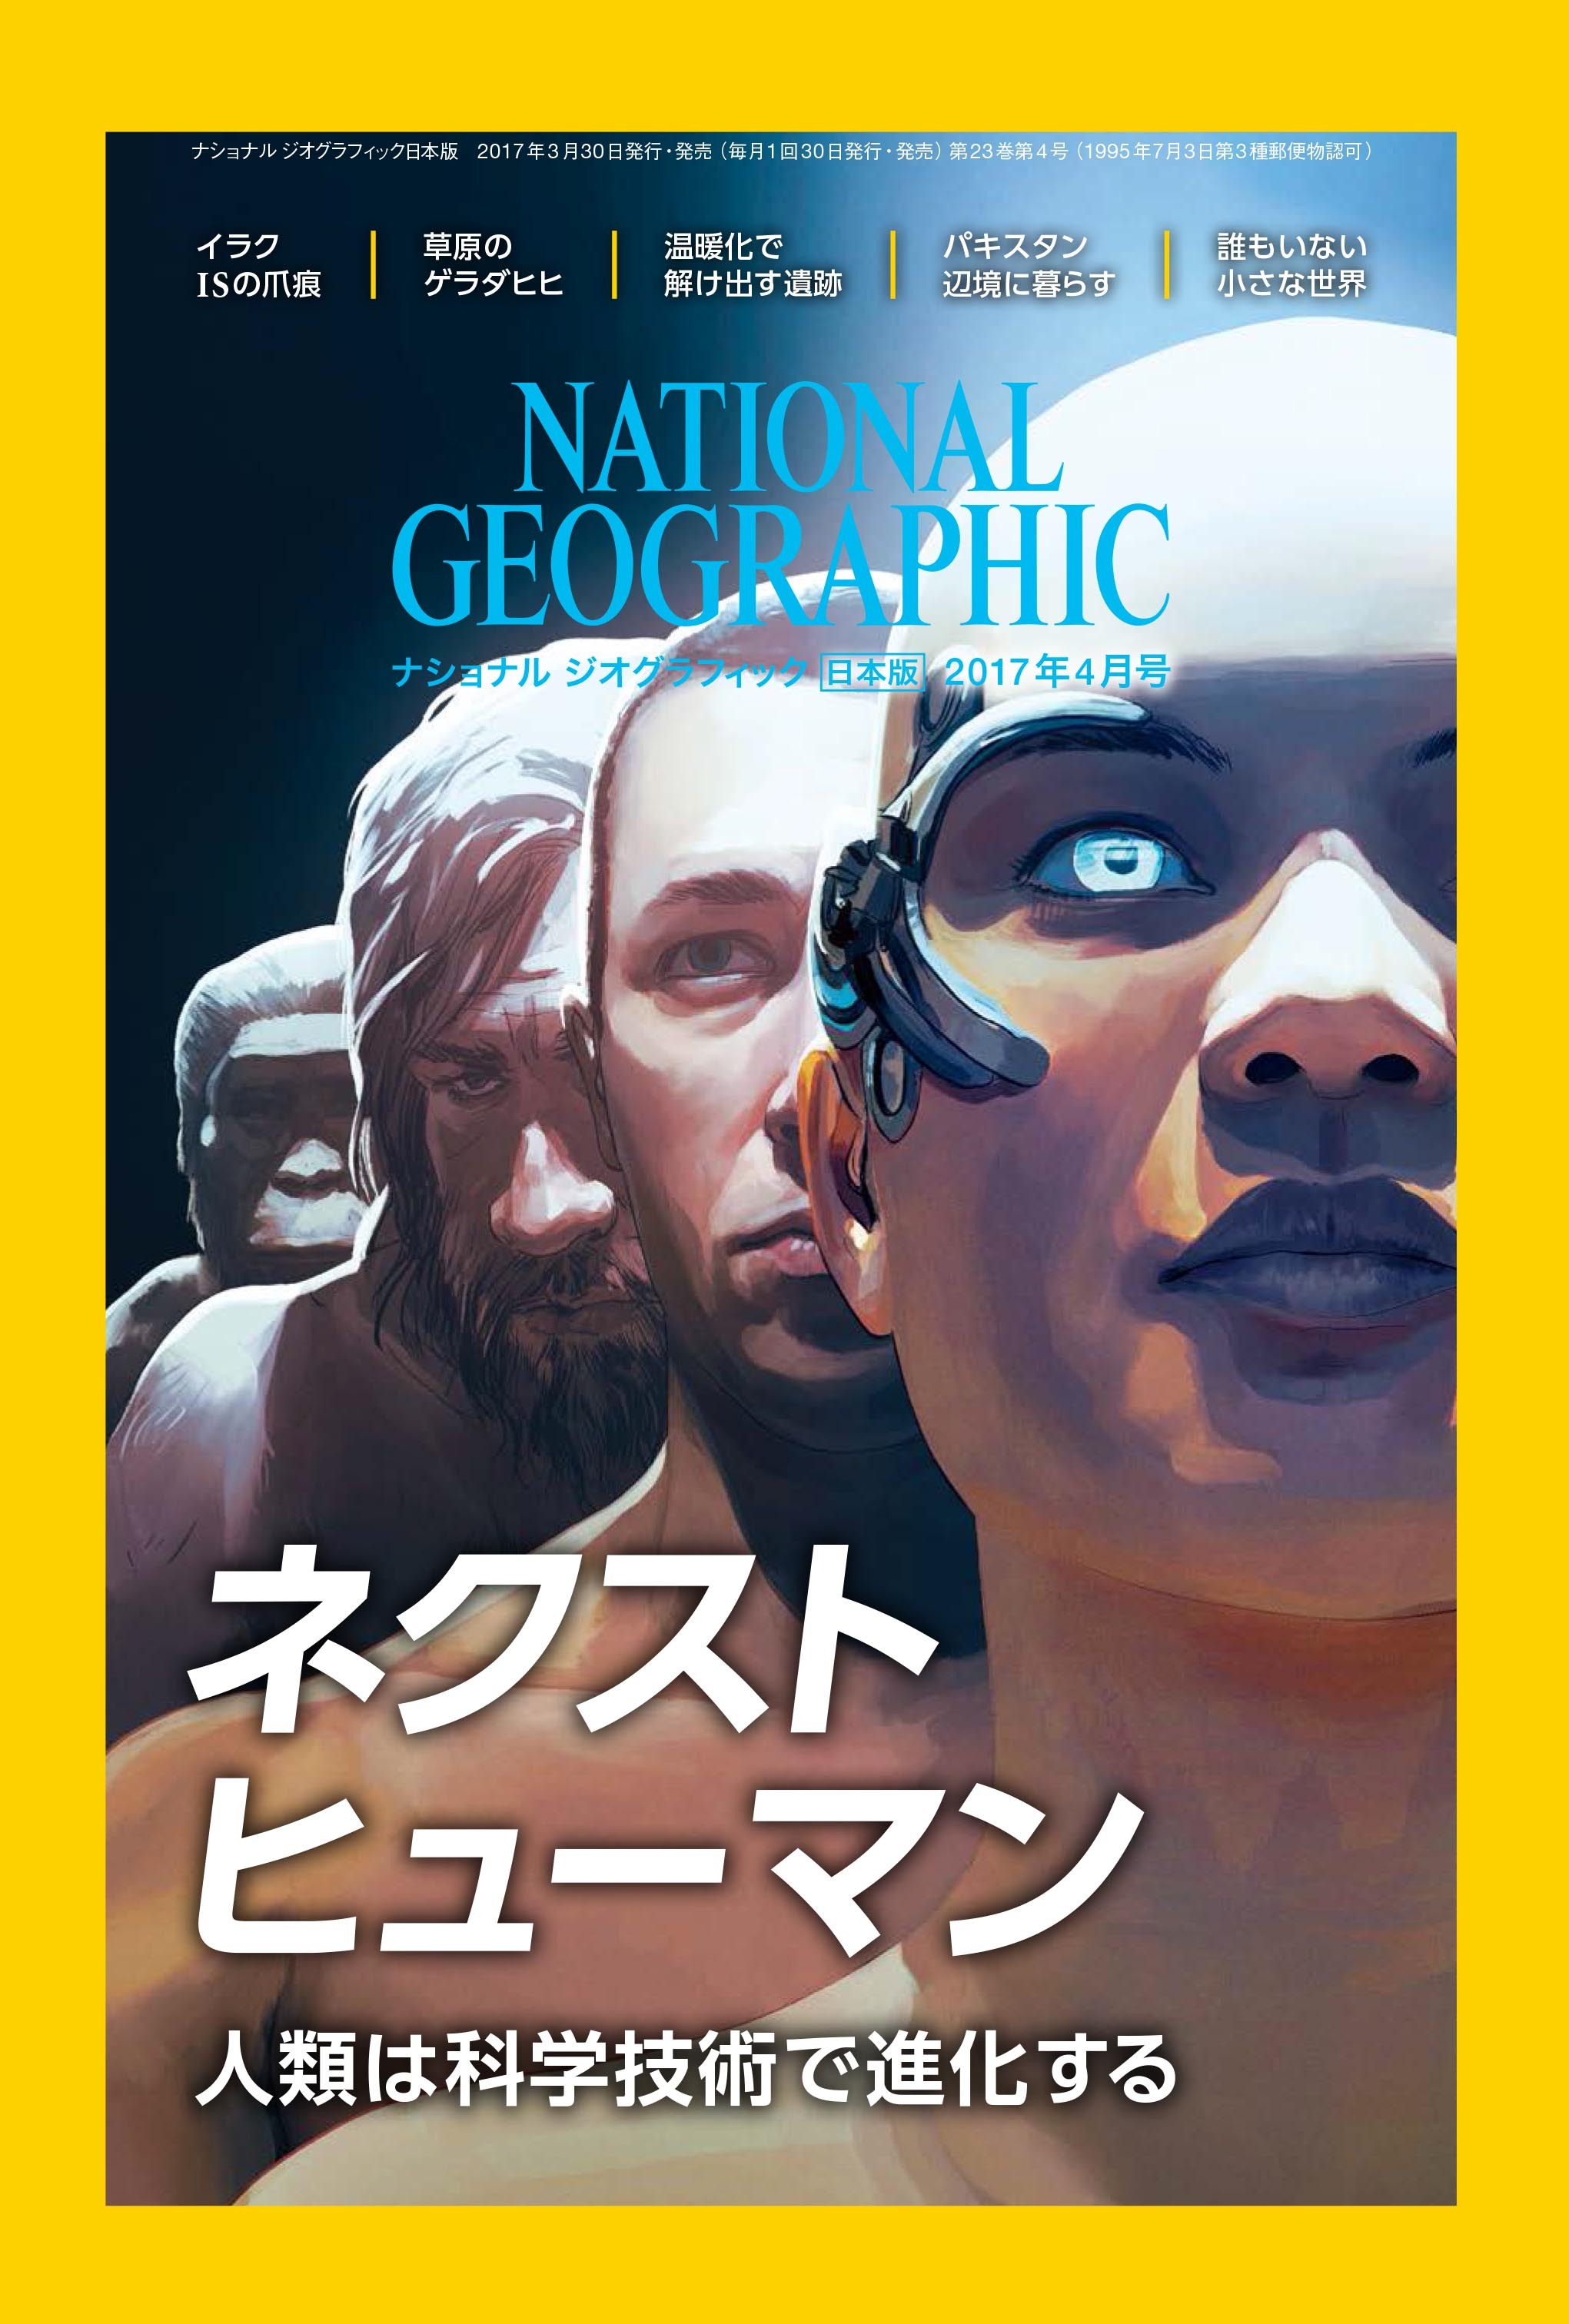 ナショナル ジオグラフィック日本版2017年4月号3月30日（木）発売!